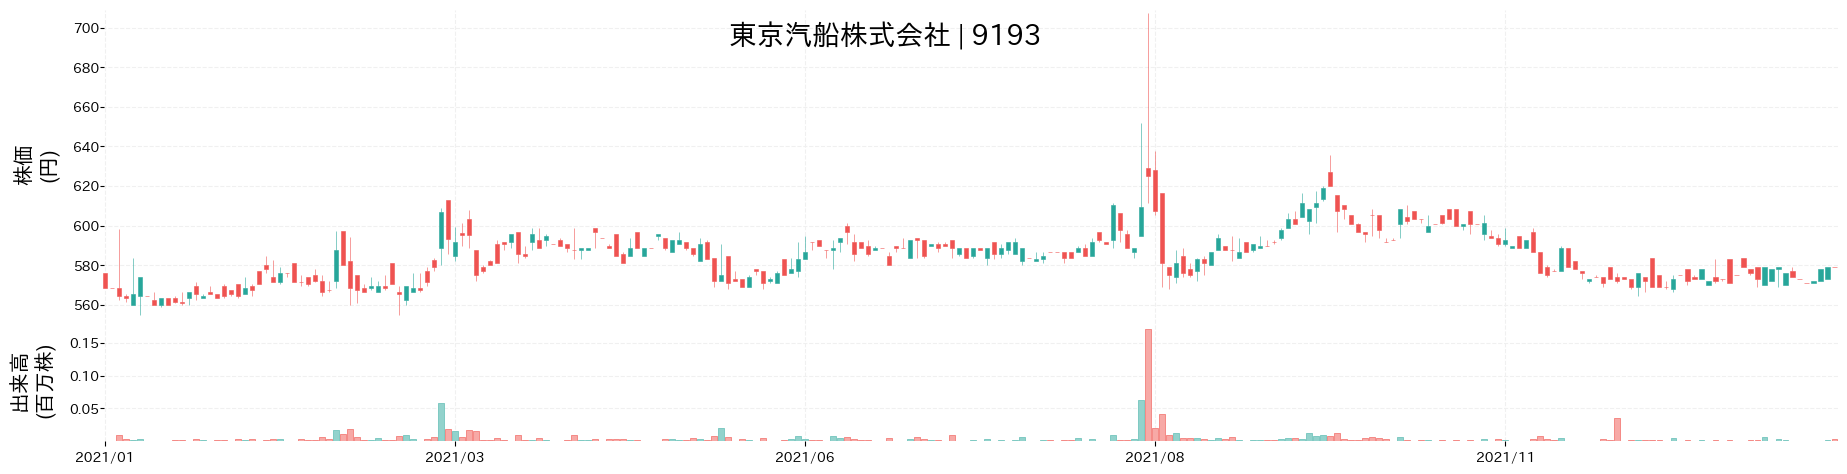 東京汽船の株価推移(2021)